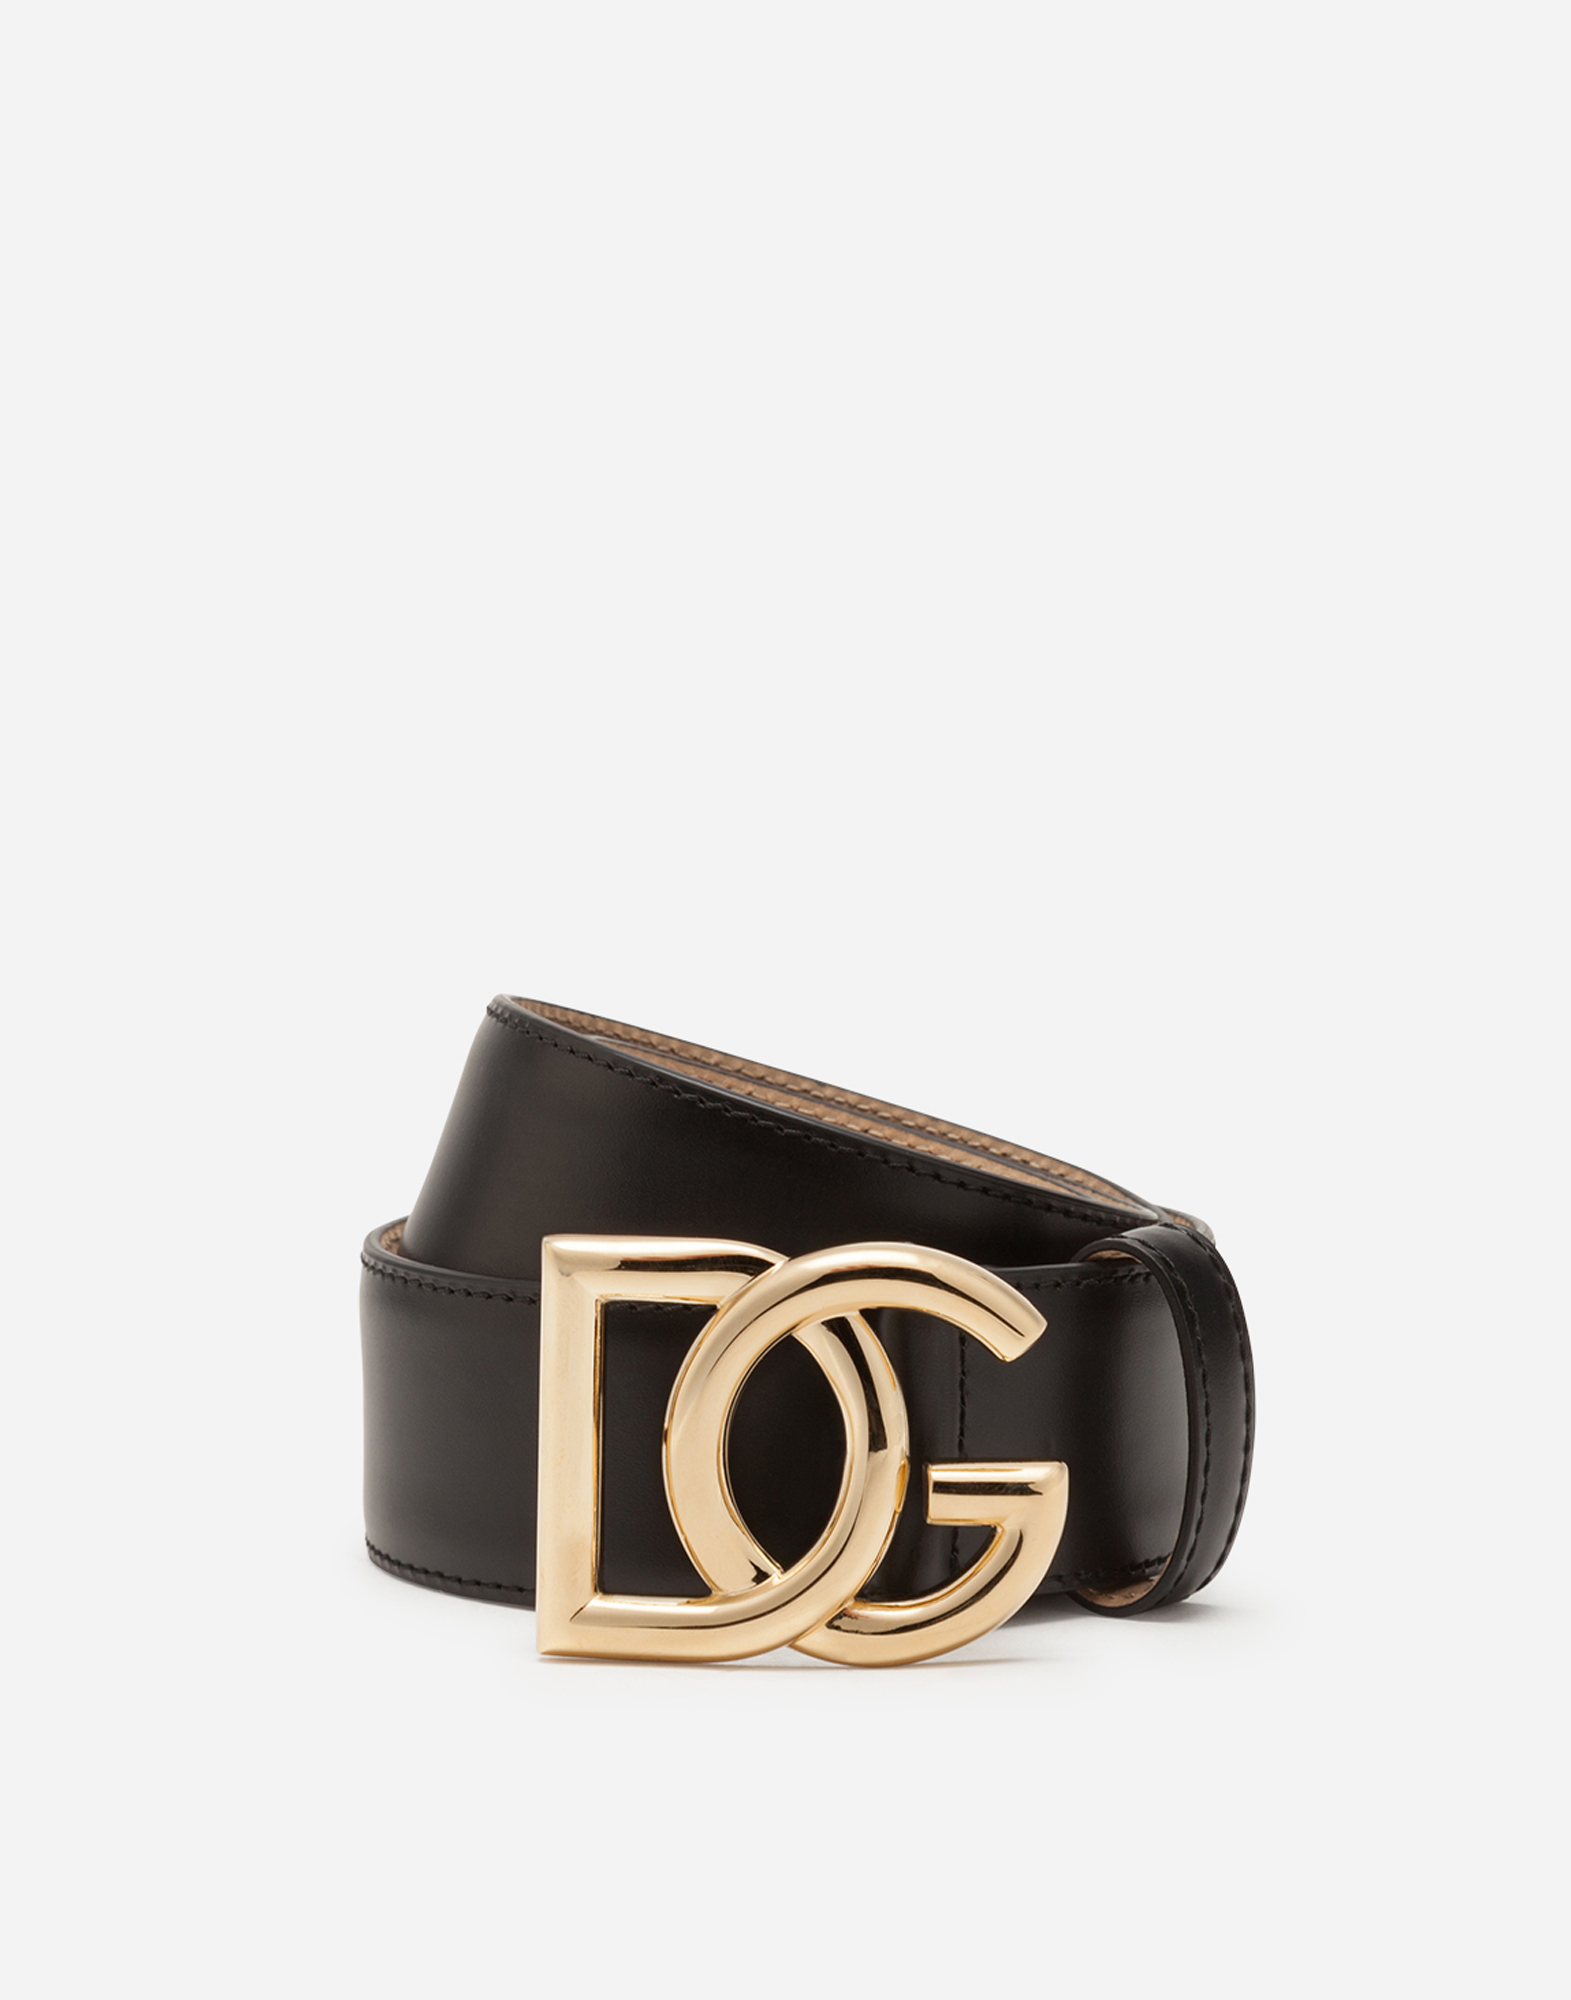 Leather belt with D\u0026G millennials logo